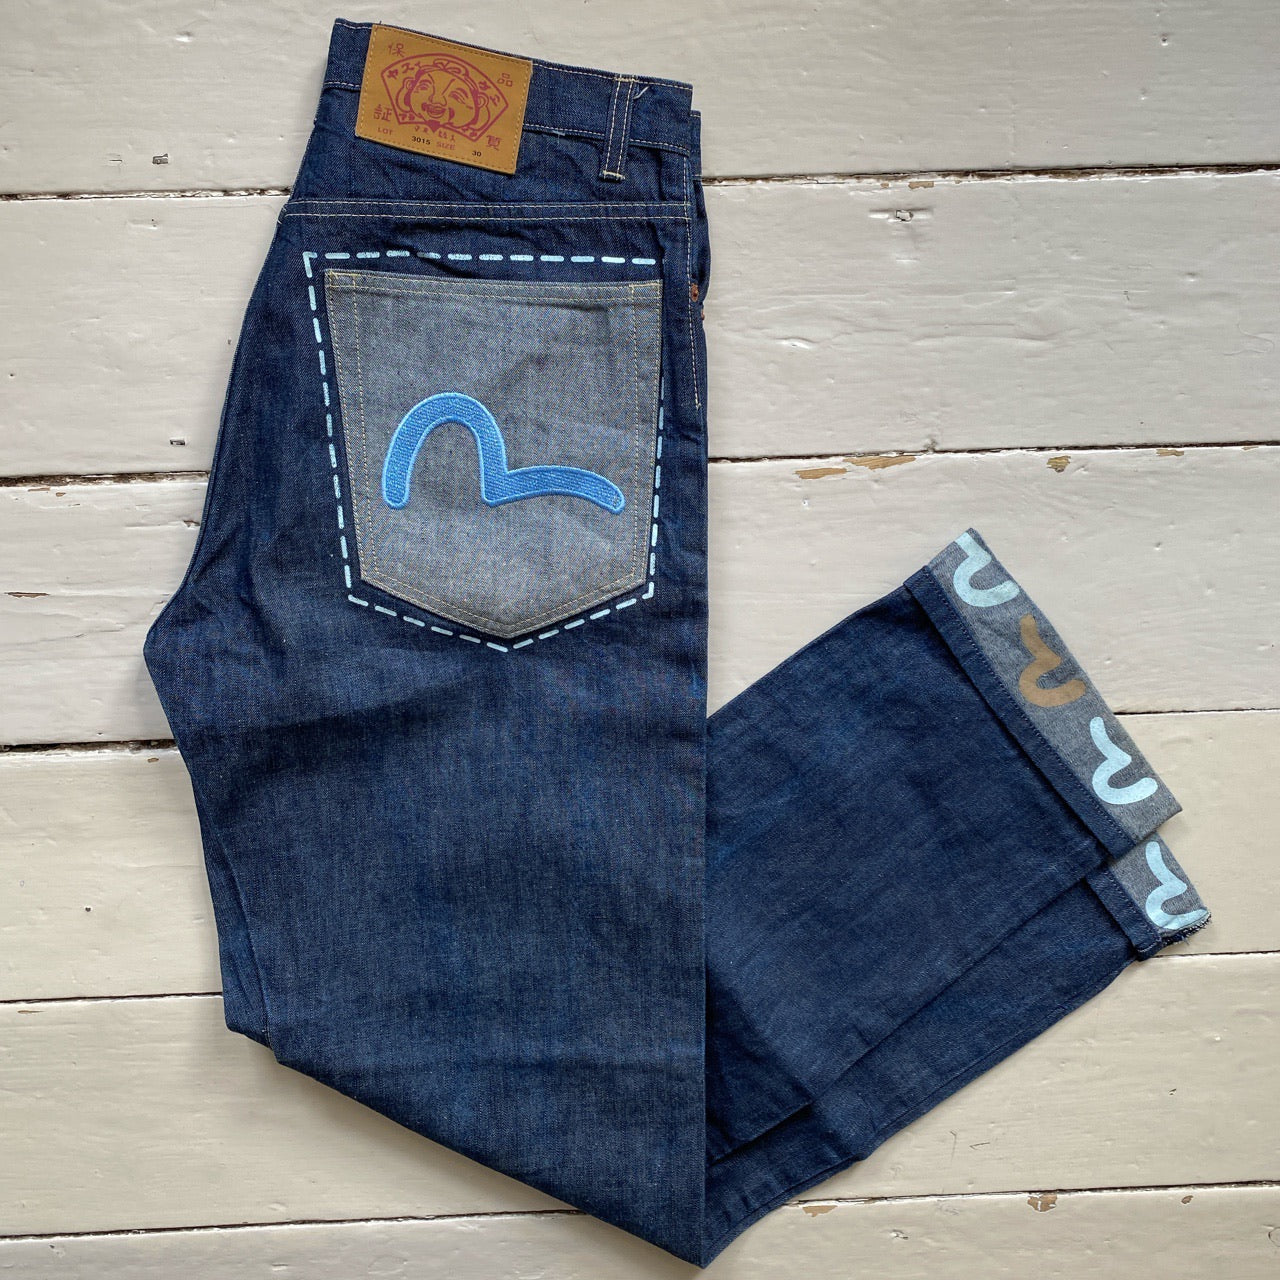 Evisu Patch Pocket Jeans (30/33)